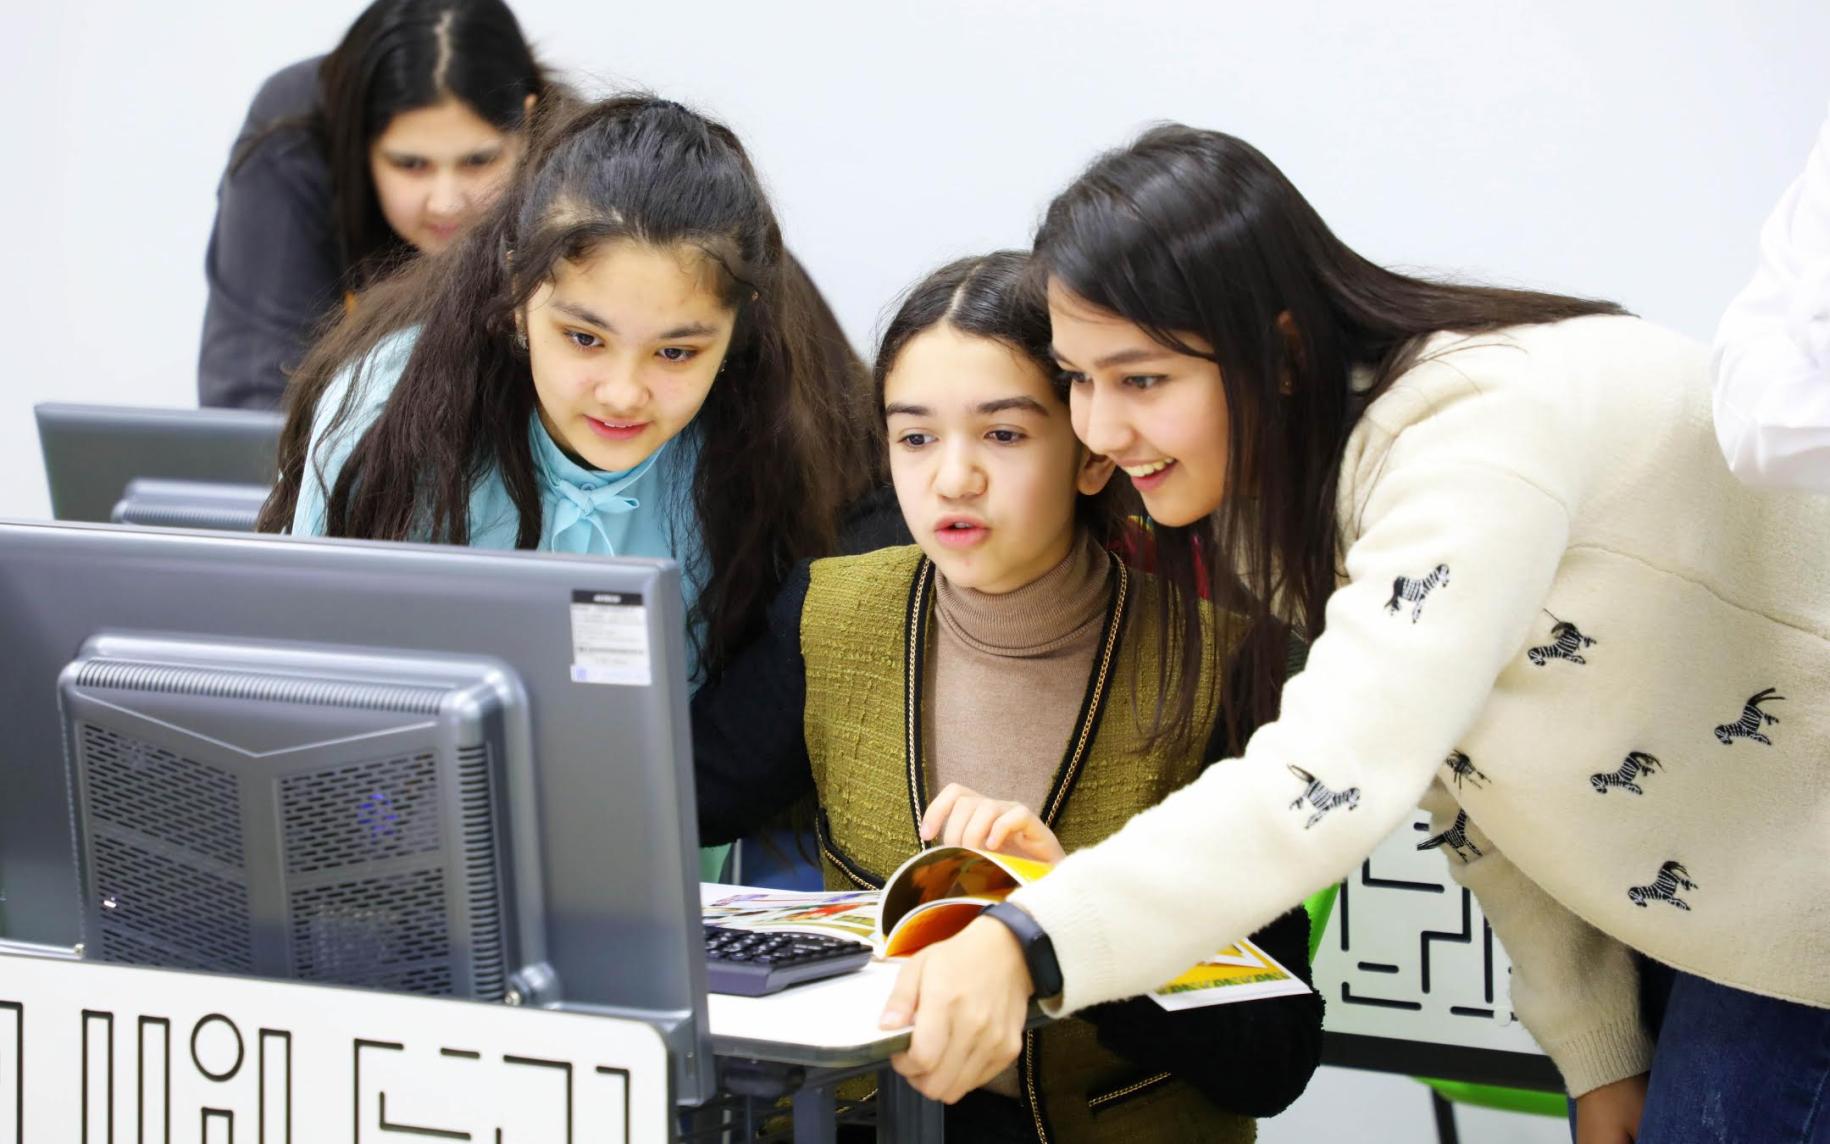 Un grupo de niñas sonrientes que trabajan juntas en una computadora. Otra chica en el fondo trabajando en su computadora.